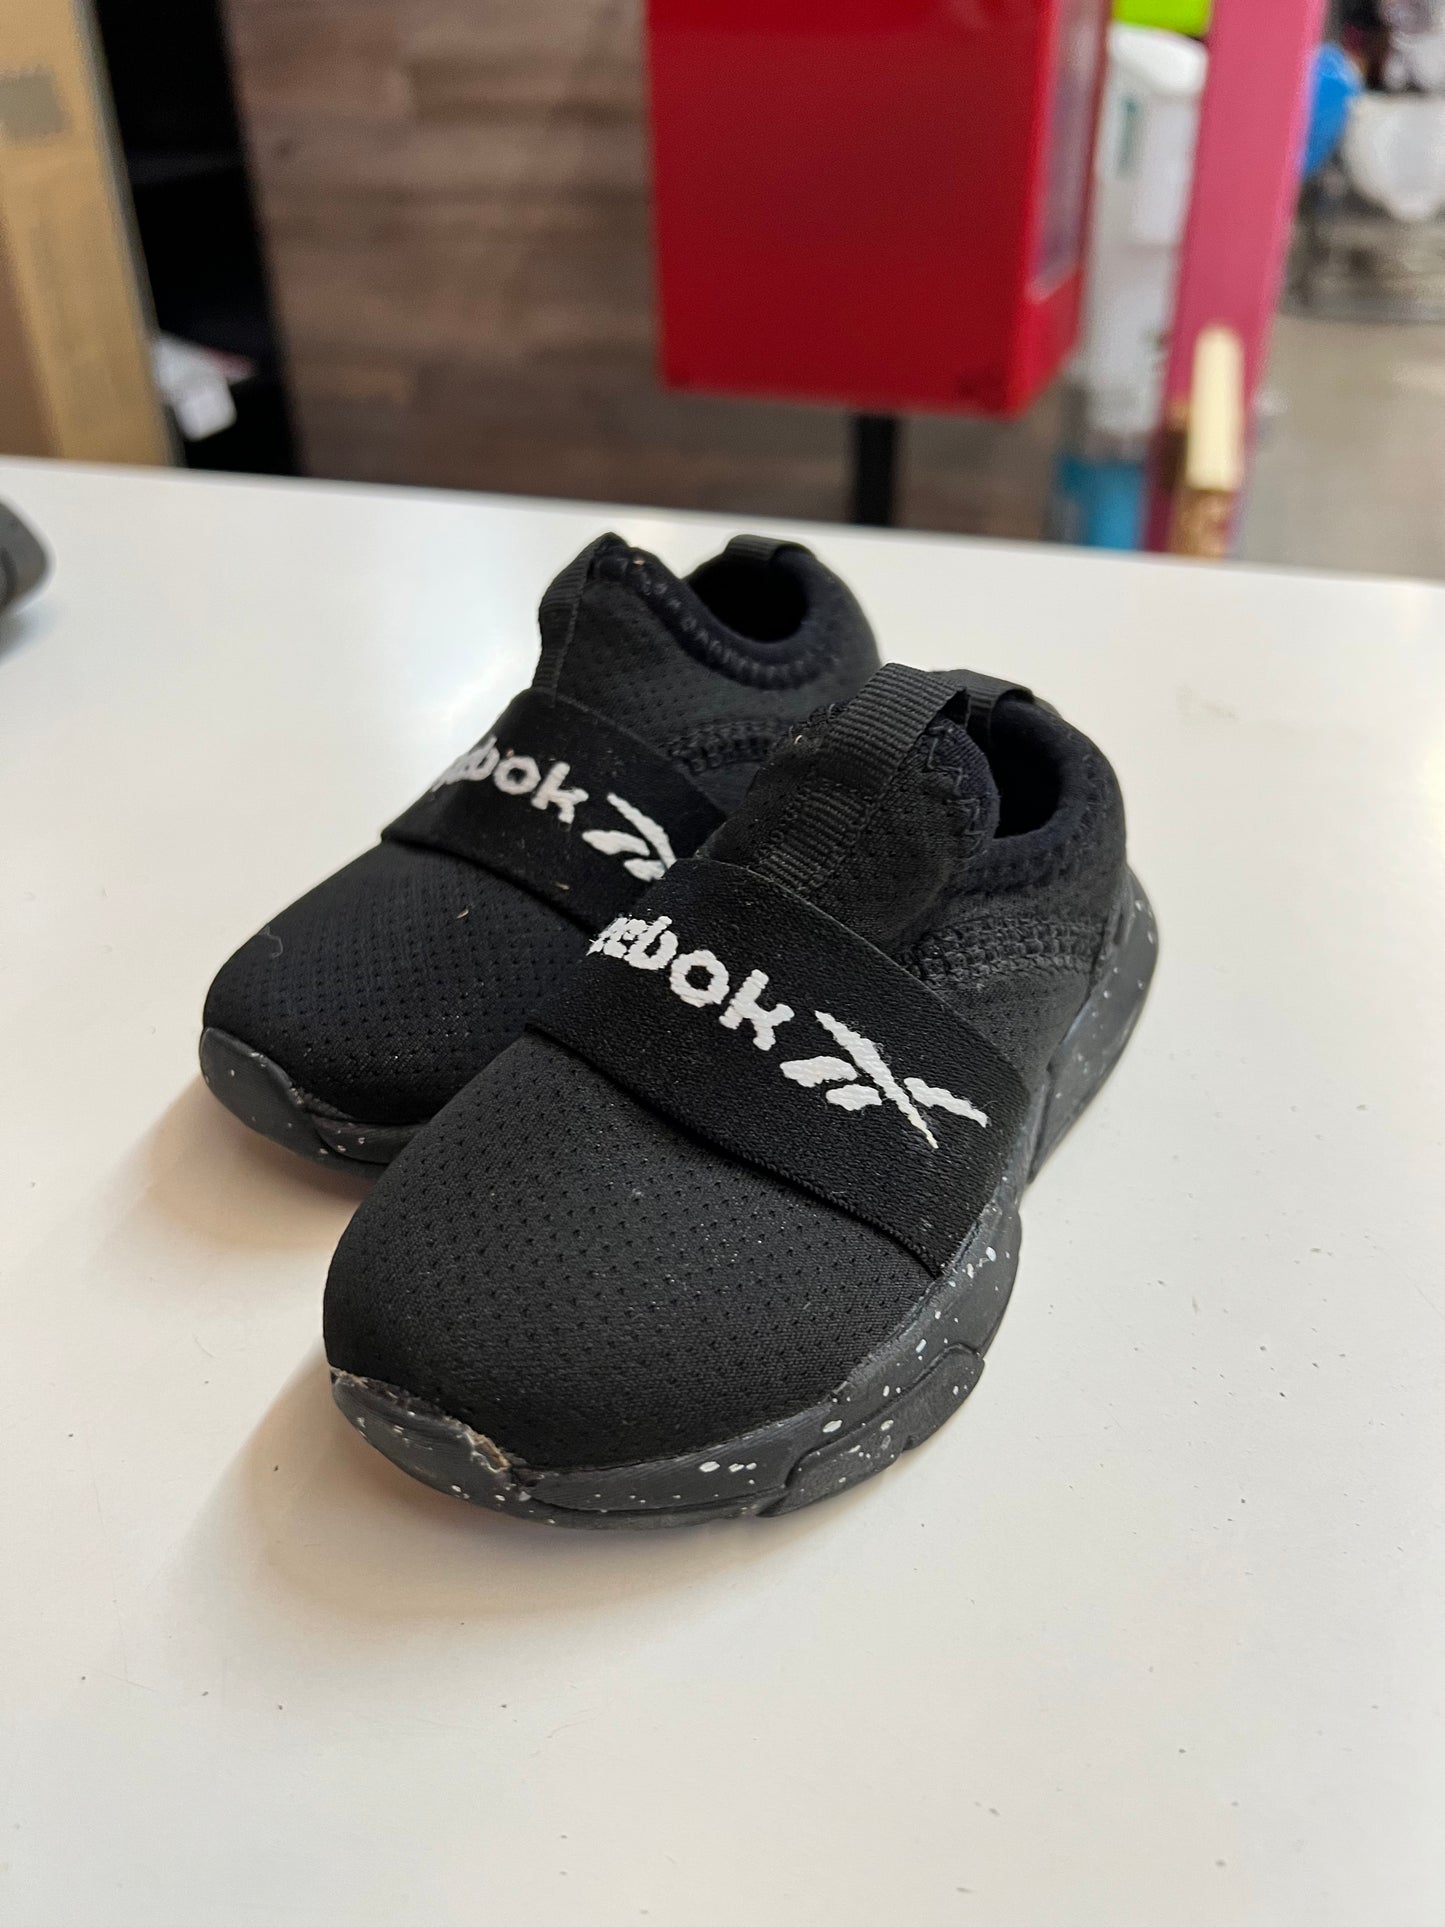 Black Reebok Kids Shoes, Size 5c